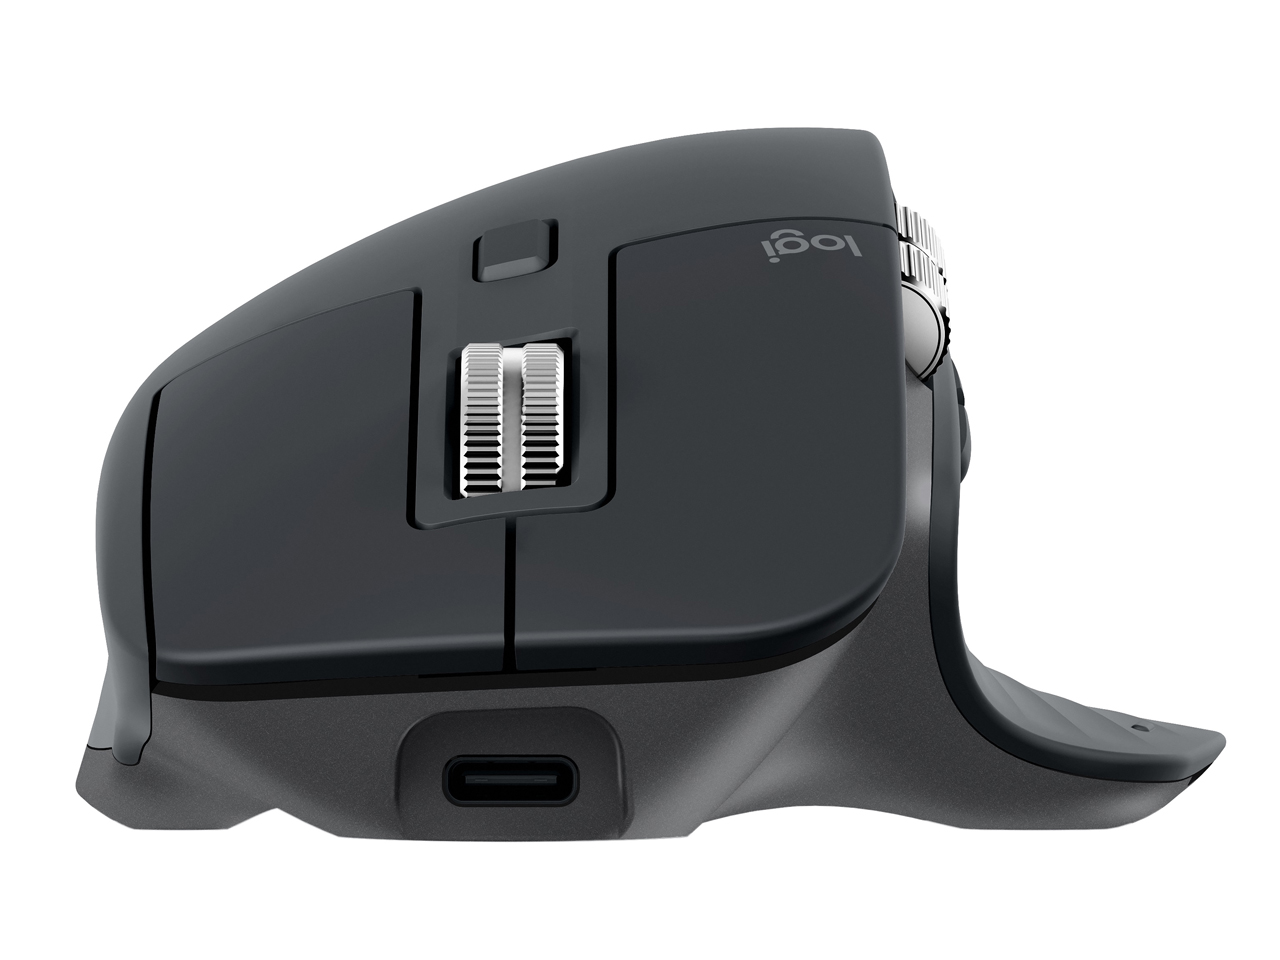 価格.com - MX Master 3 Advanced Wireless Mouse MX2200sGR [グラファイト] の製品画像